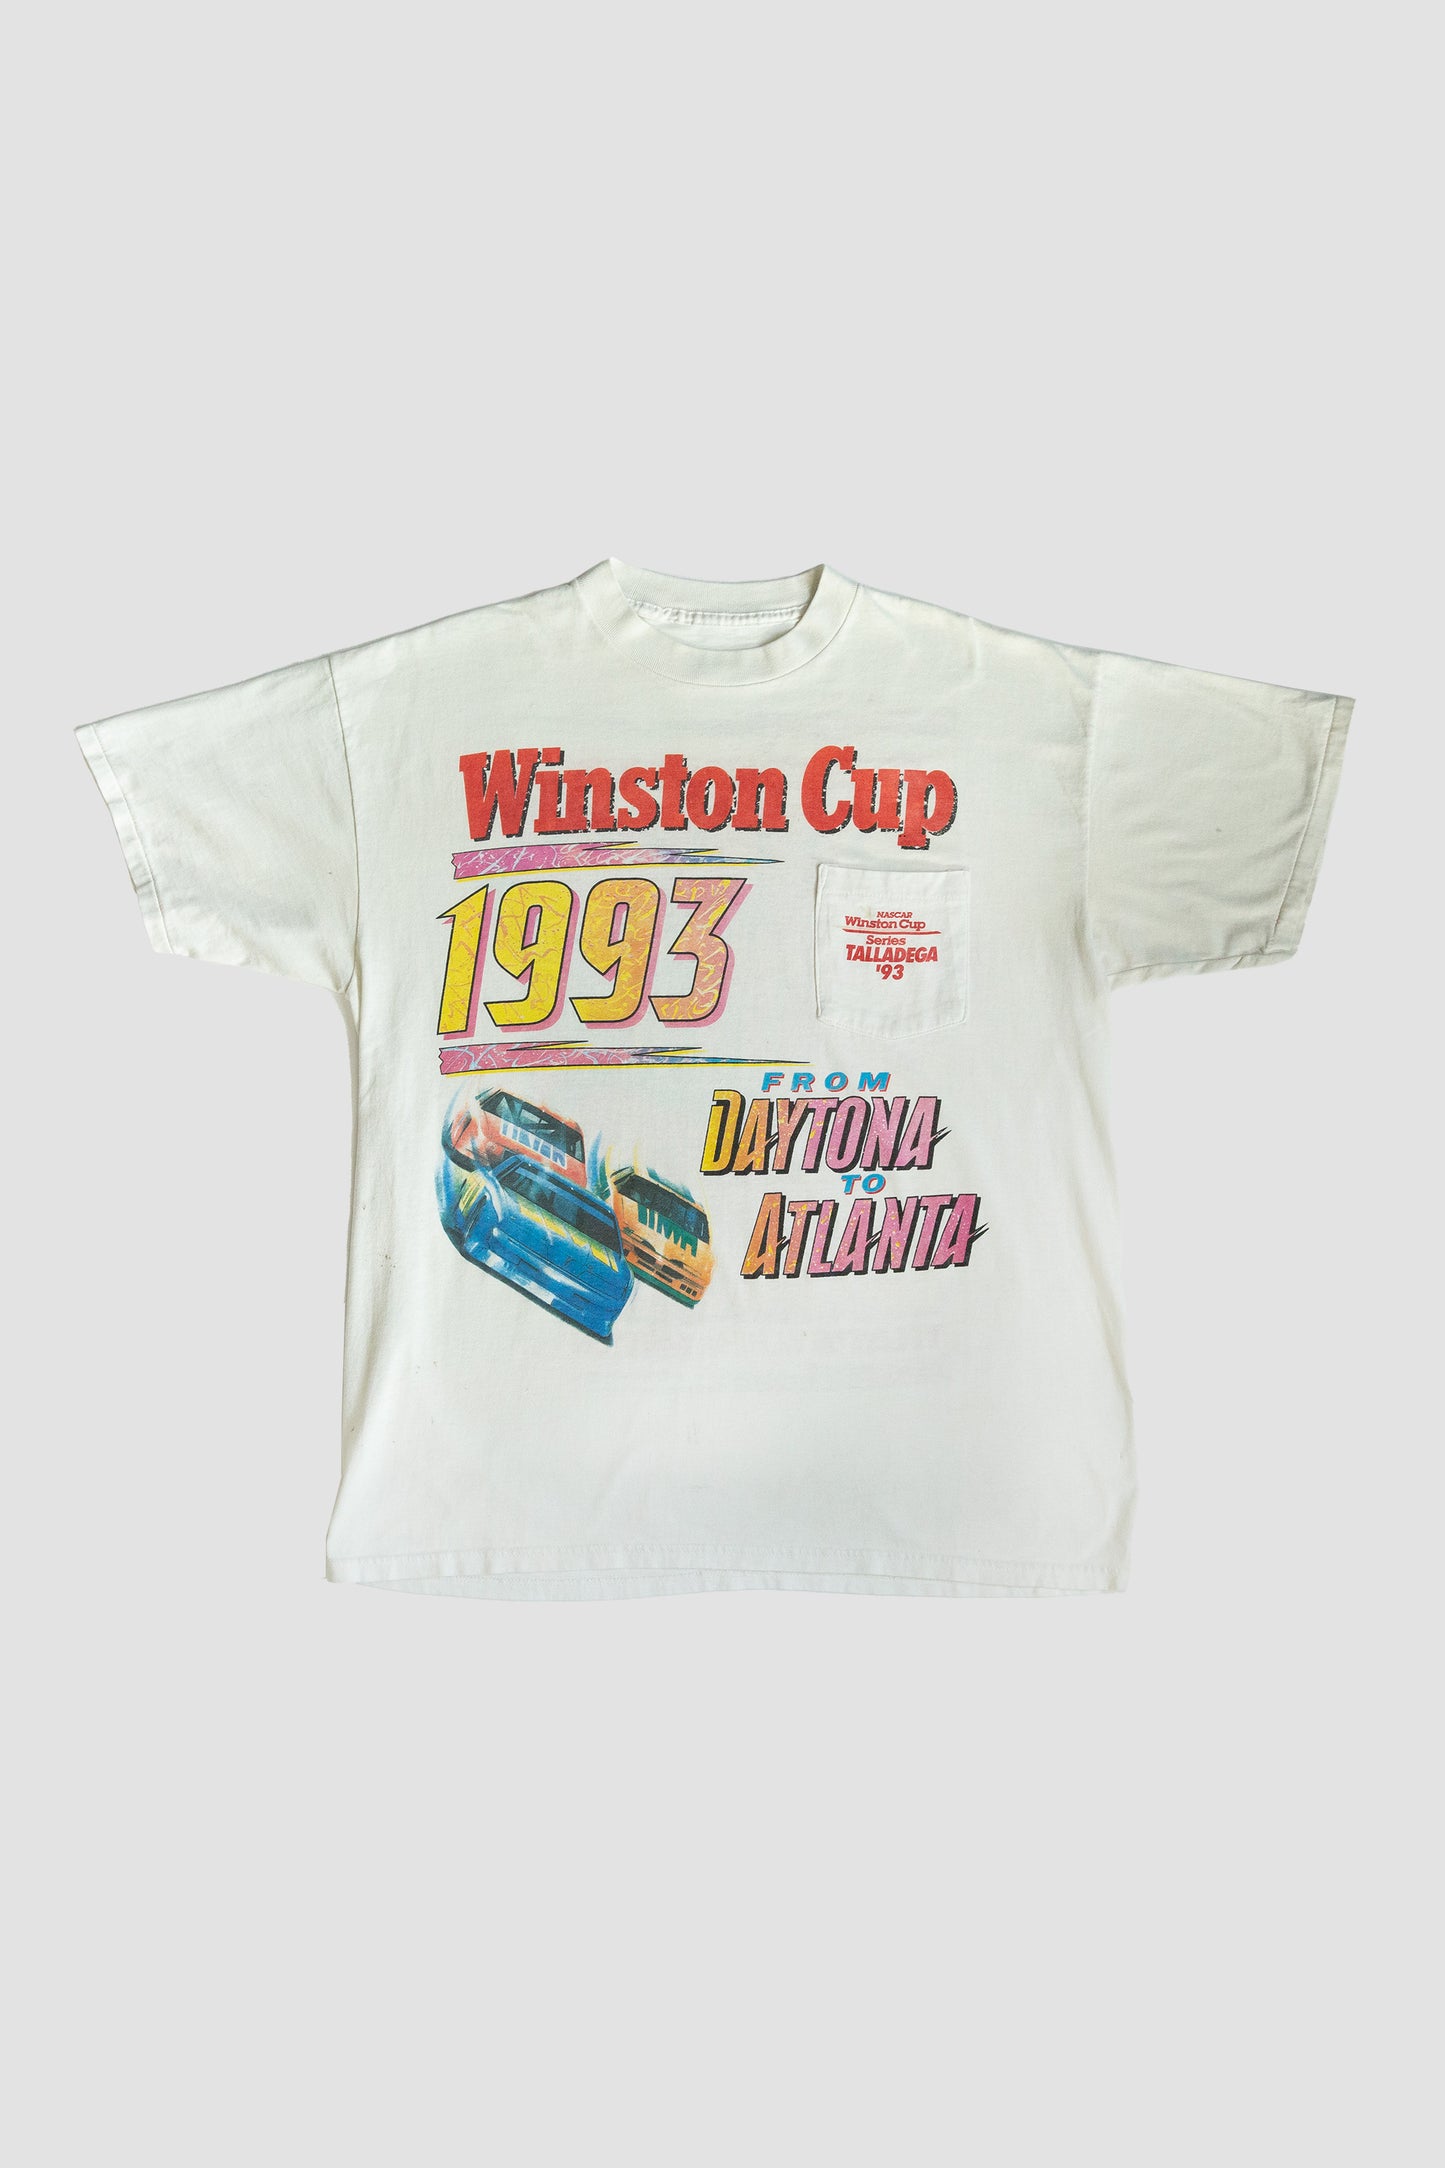 1993 Winston Cup Nascar Tee